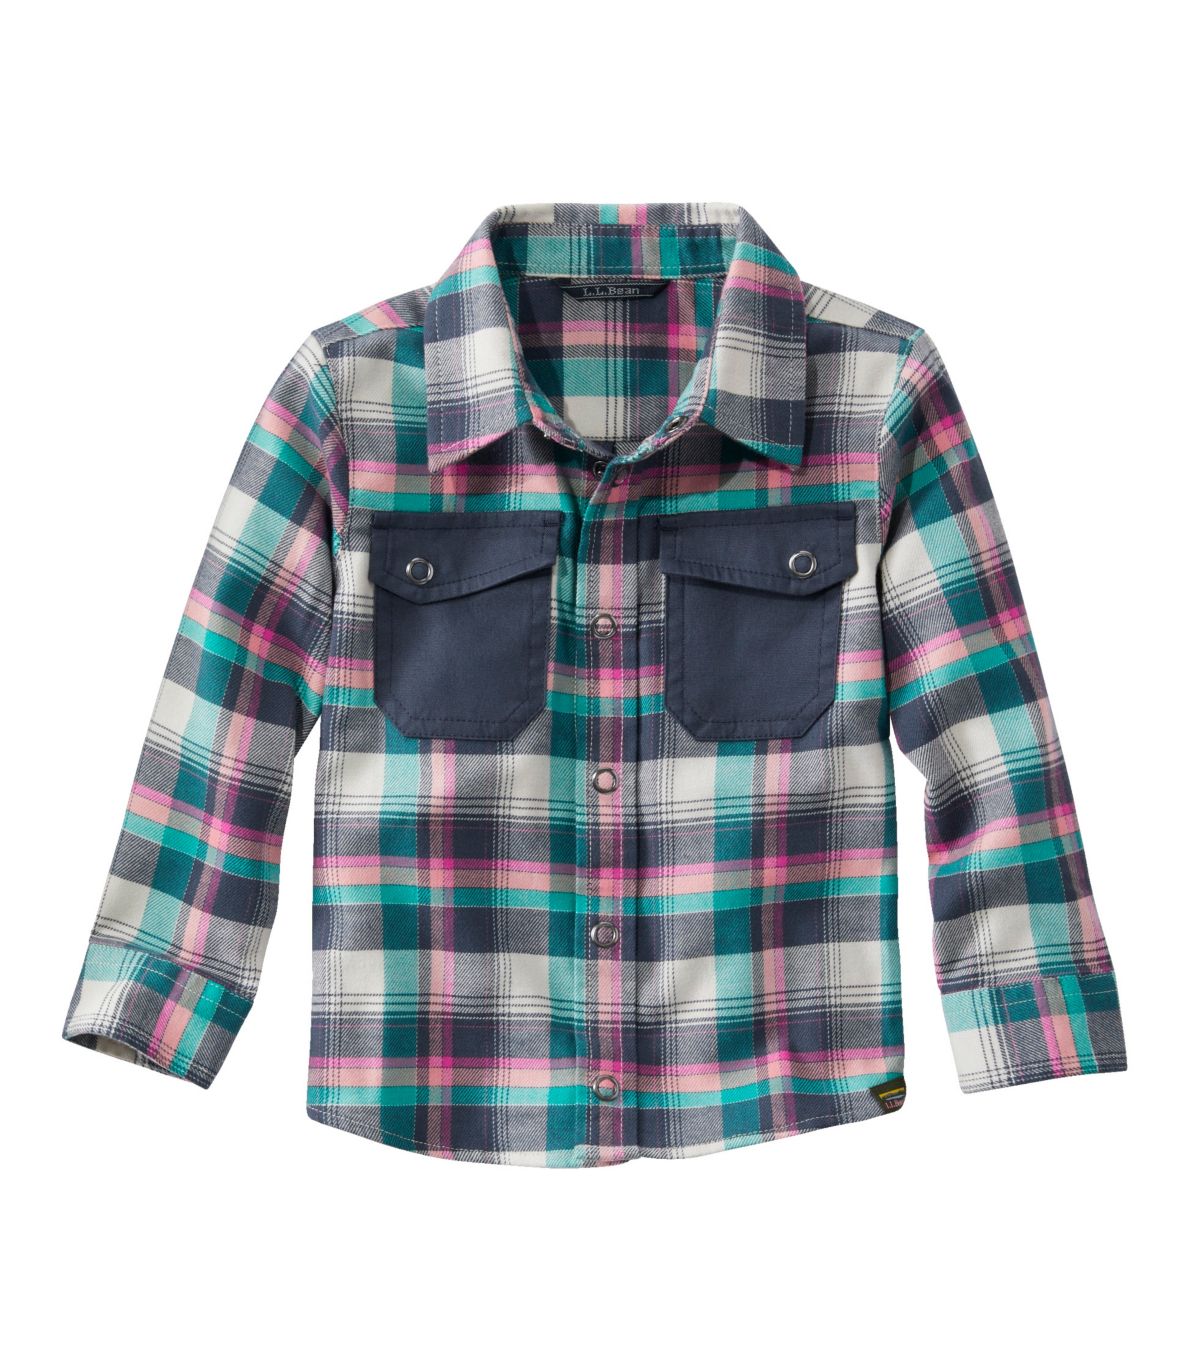 Toddlers' BeanFlex All-Season Flannel Shirt